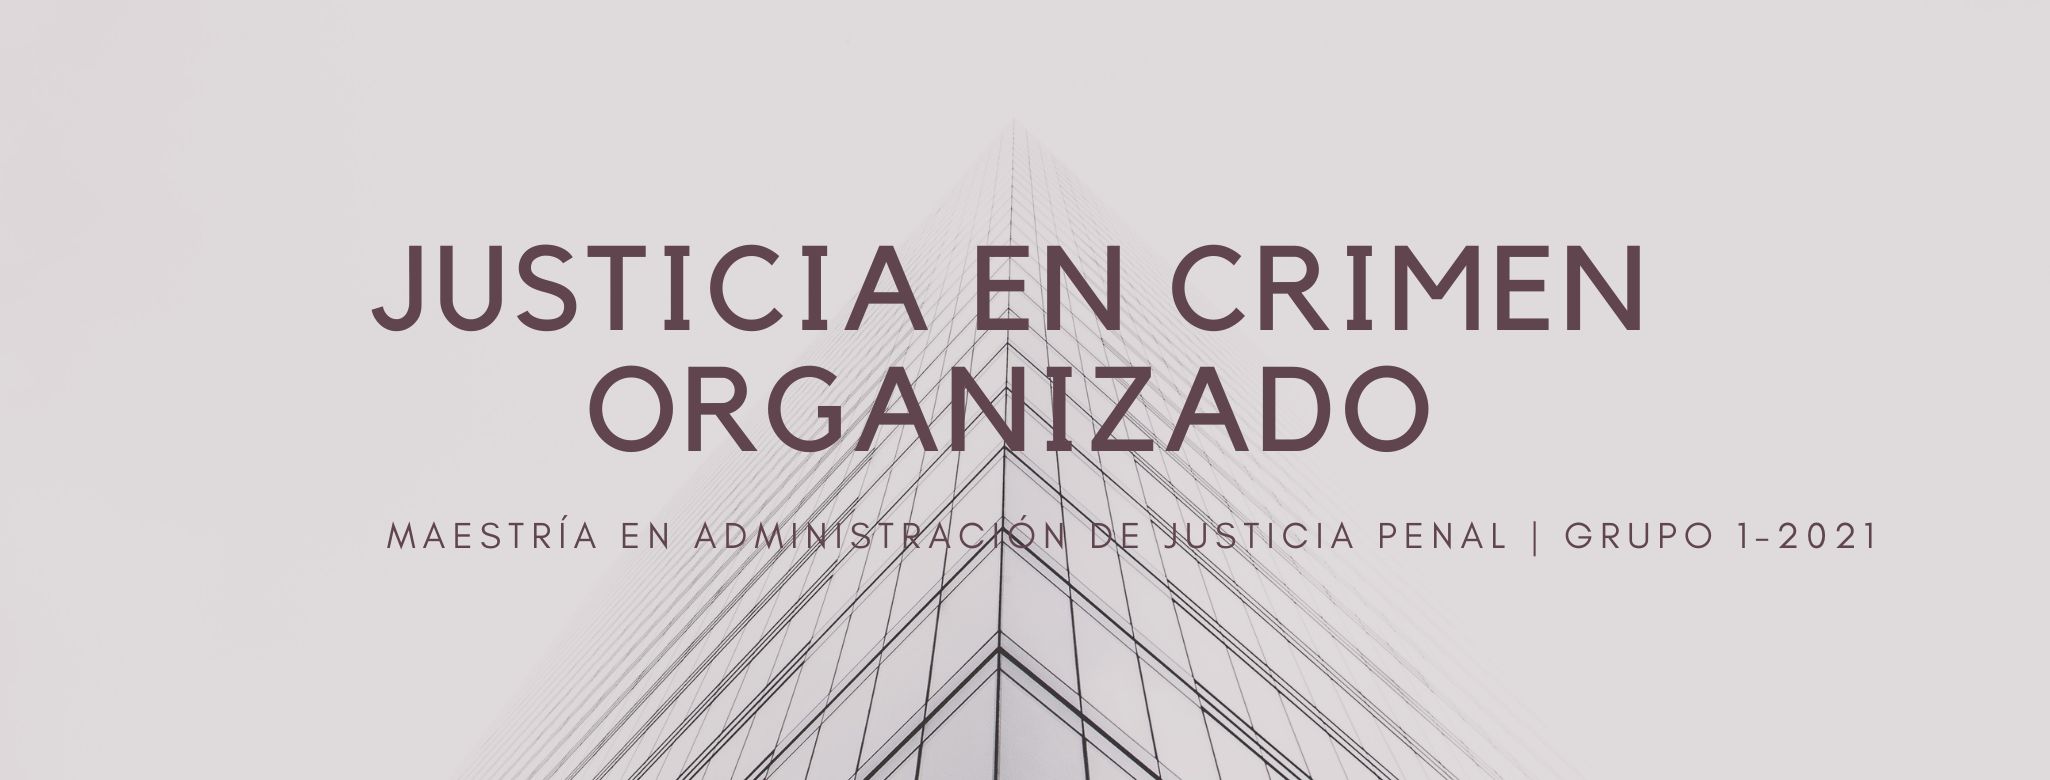 MAJP-308-23-01  Justicia en Crimen Organizado